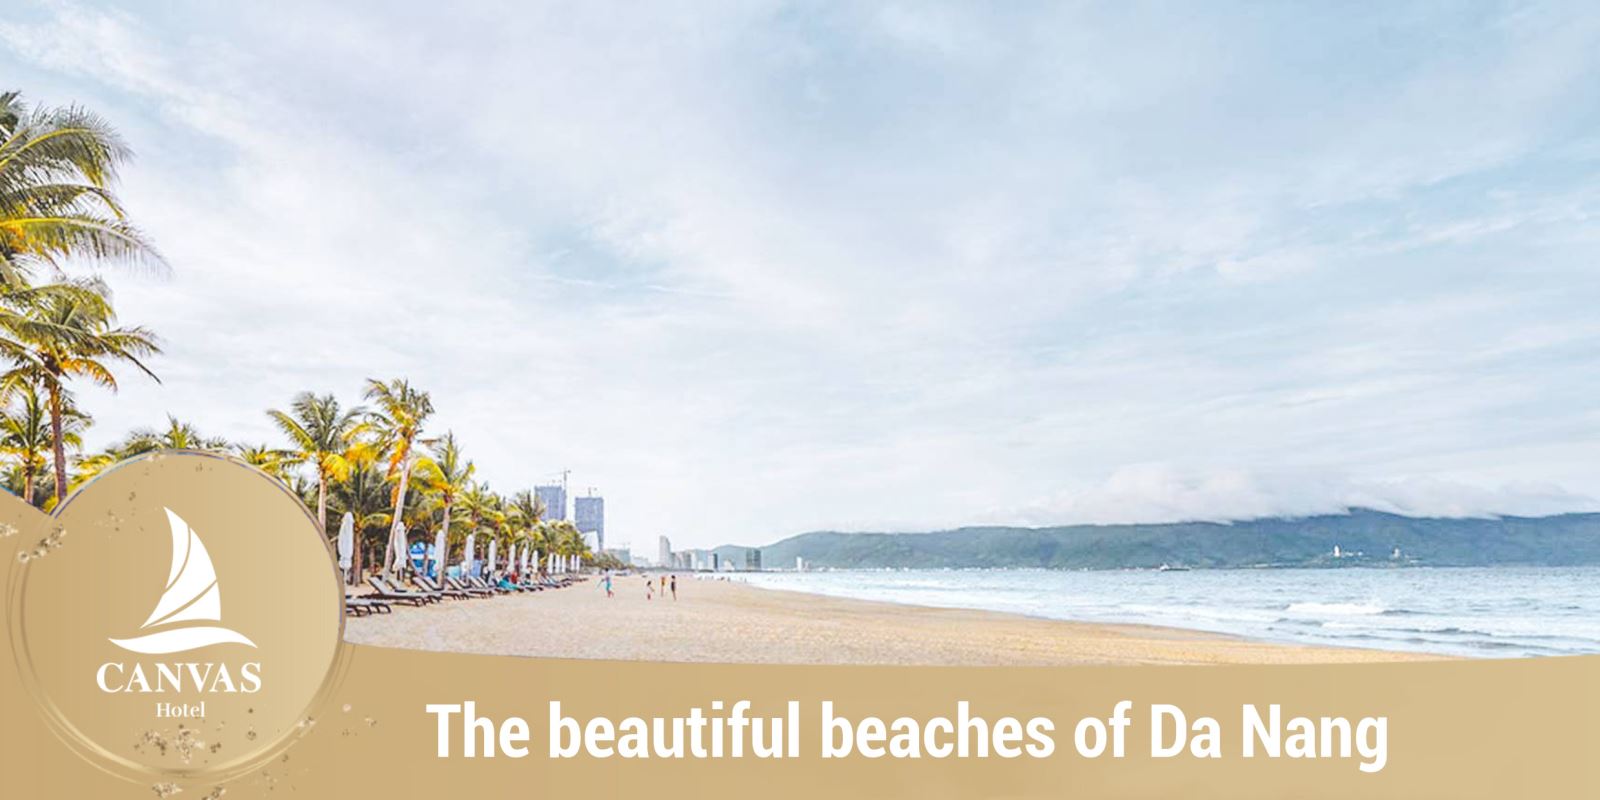 The beautiful beaches of Da Nang